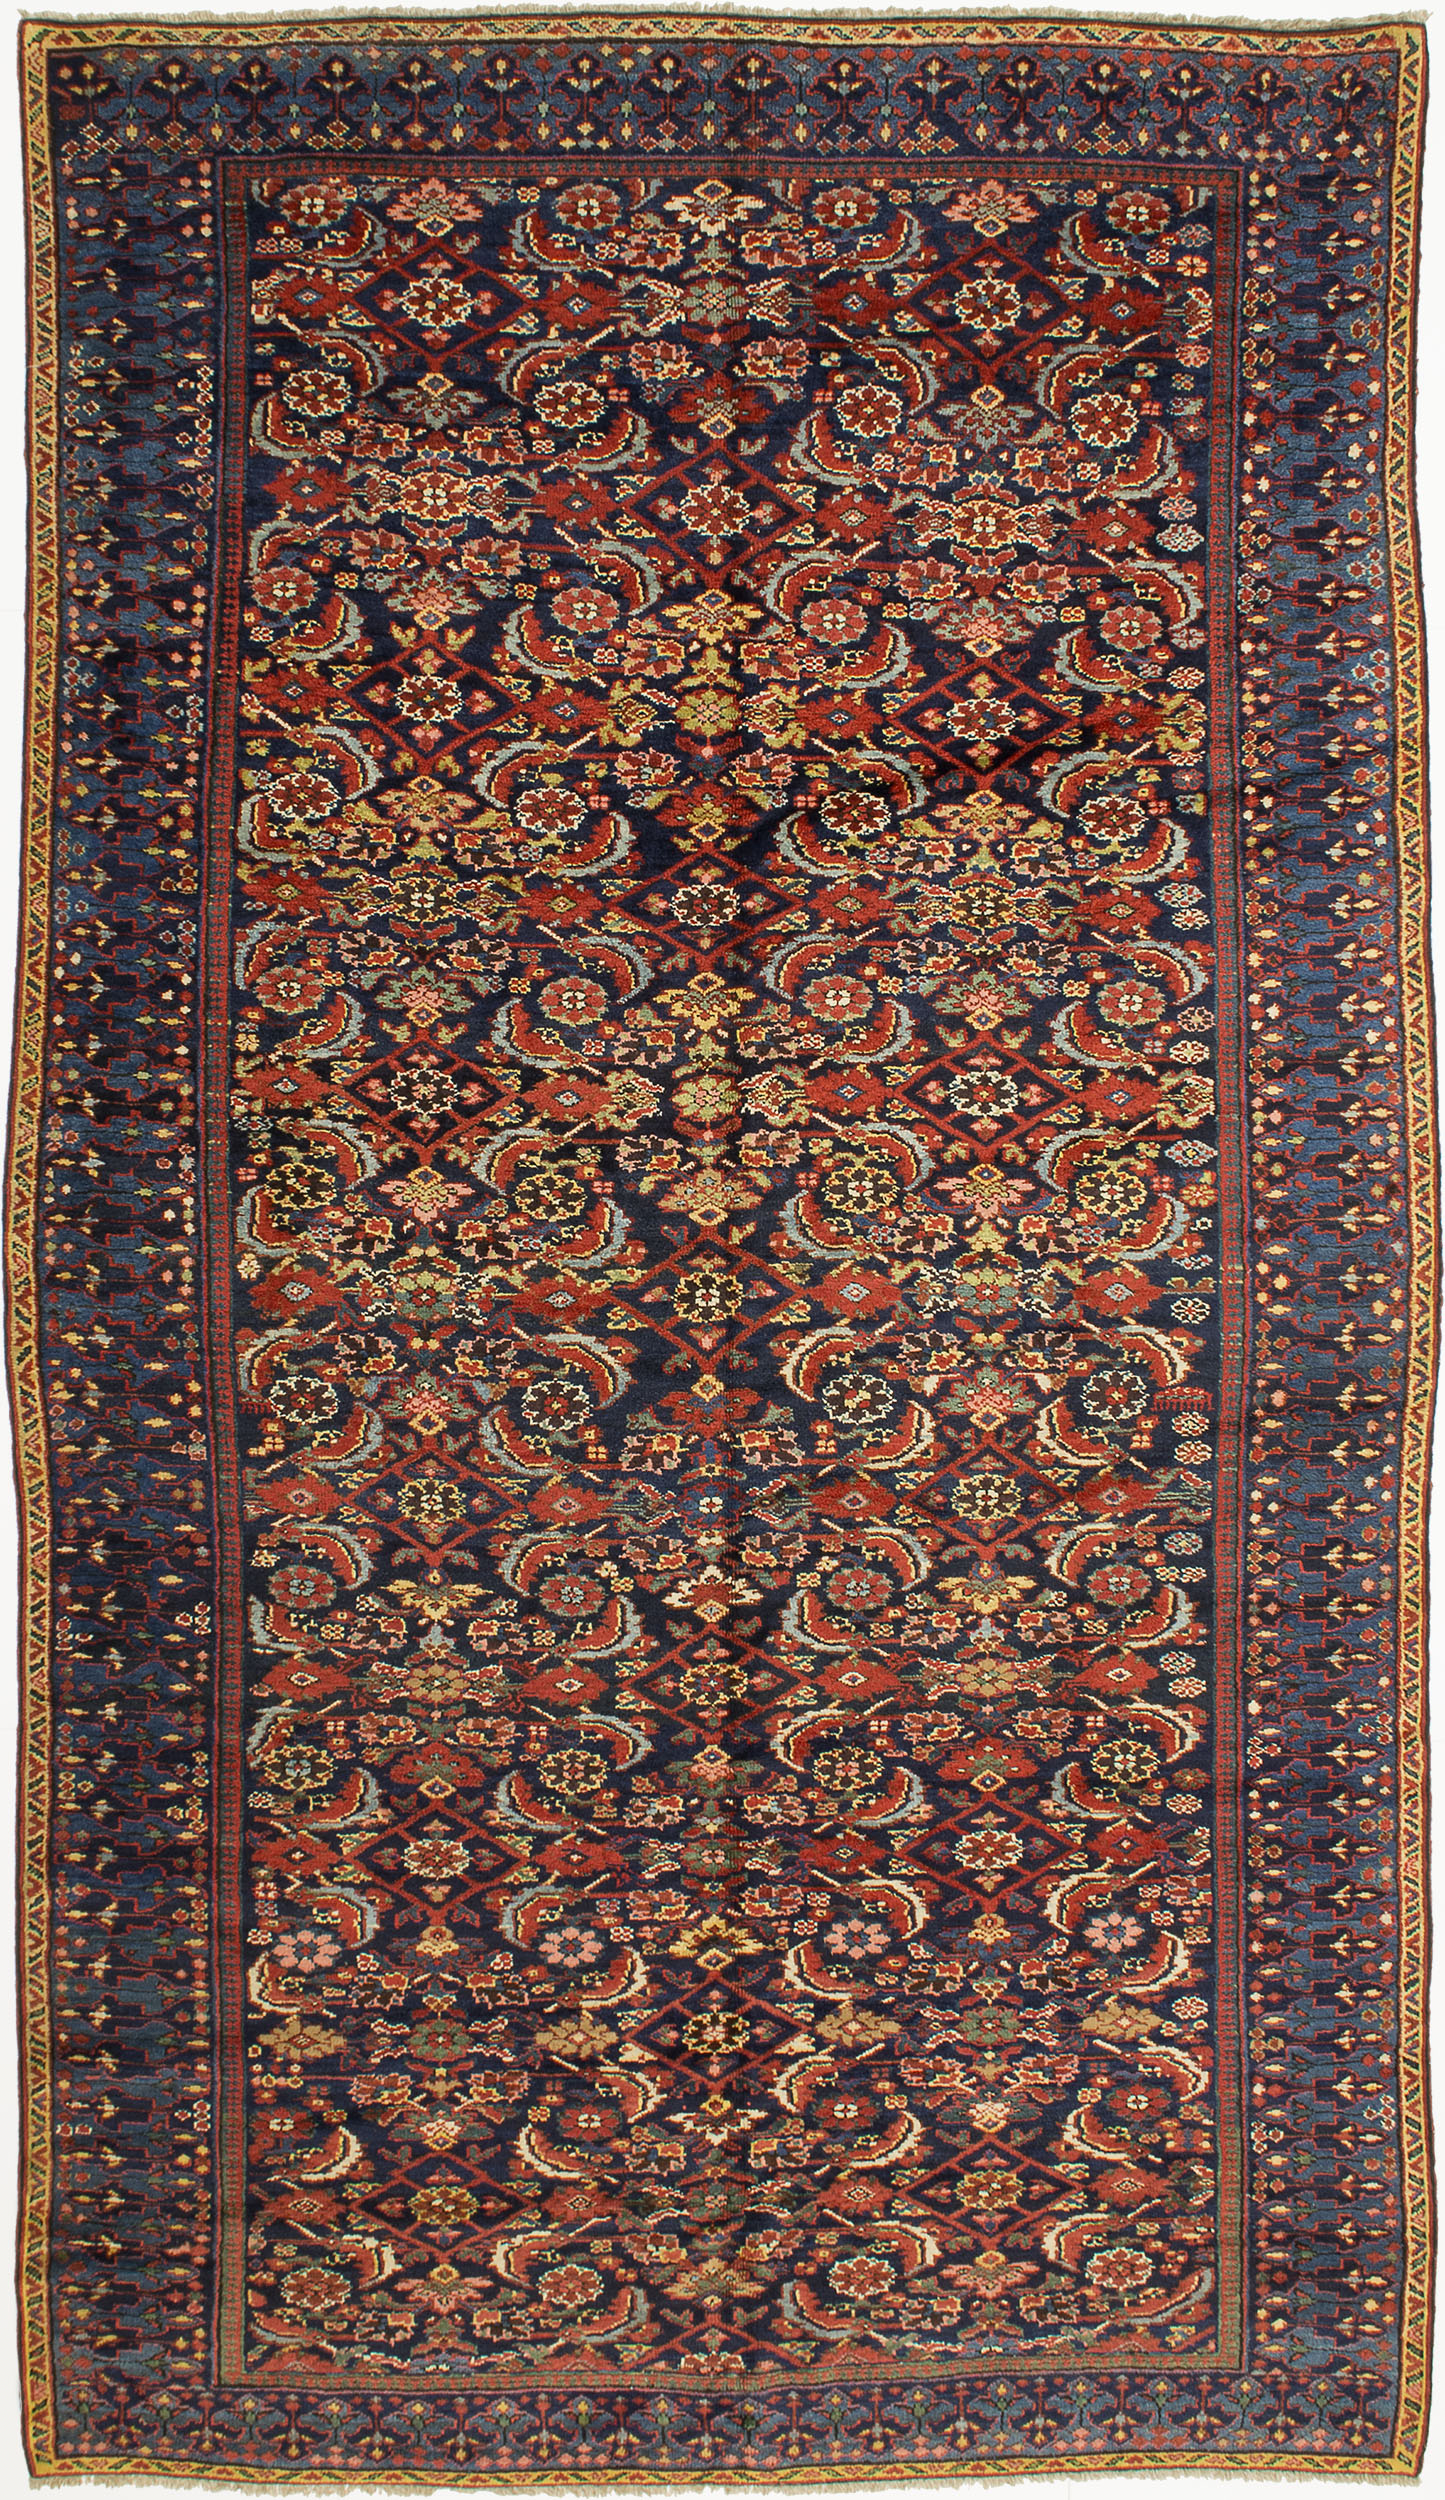 Kurdish Carpet 11' 0" x 6' 4" 